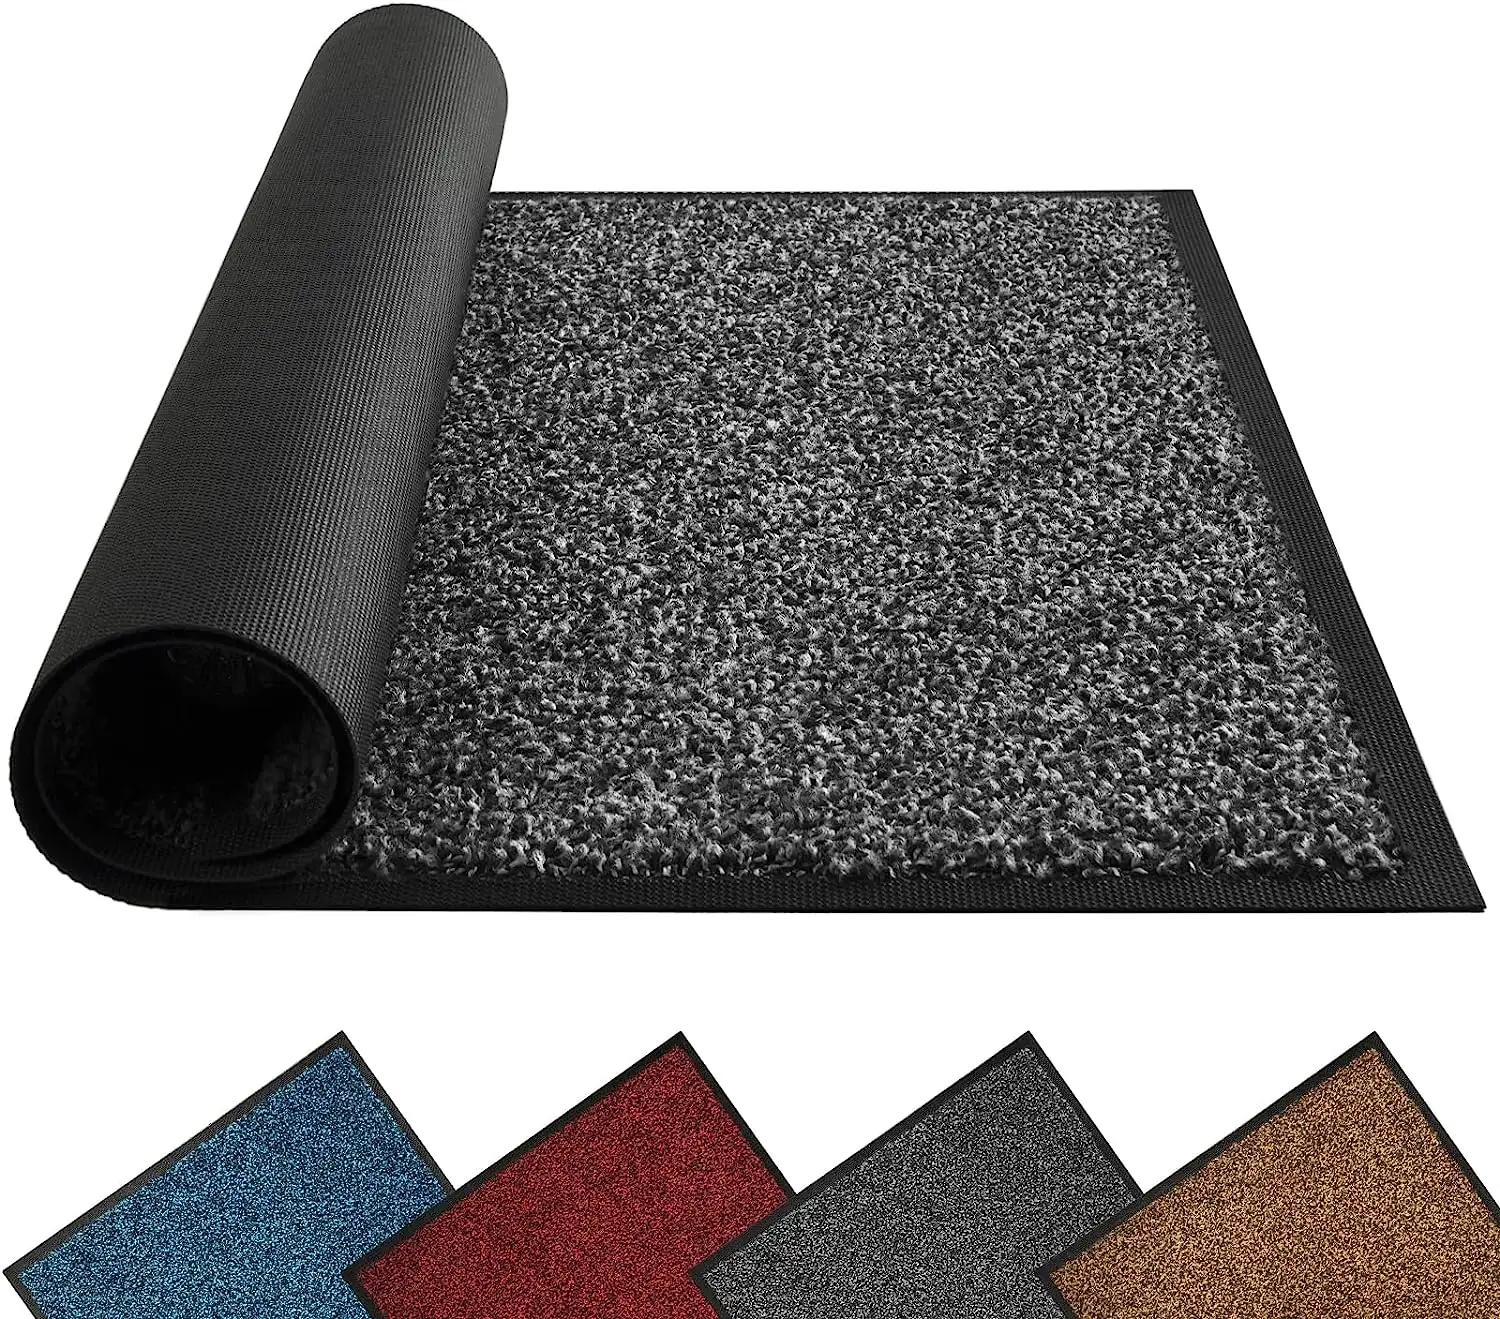 Felpudos de respaldo de pvc para interiores y exteriores, alfombra antideslizante de alta resistencia para zapatos de entrada, barato, venta al por mayor